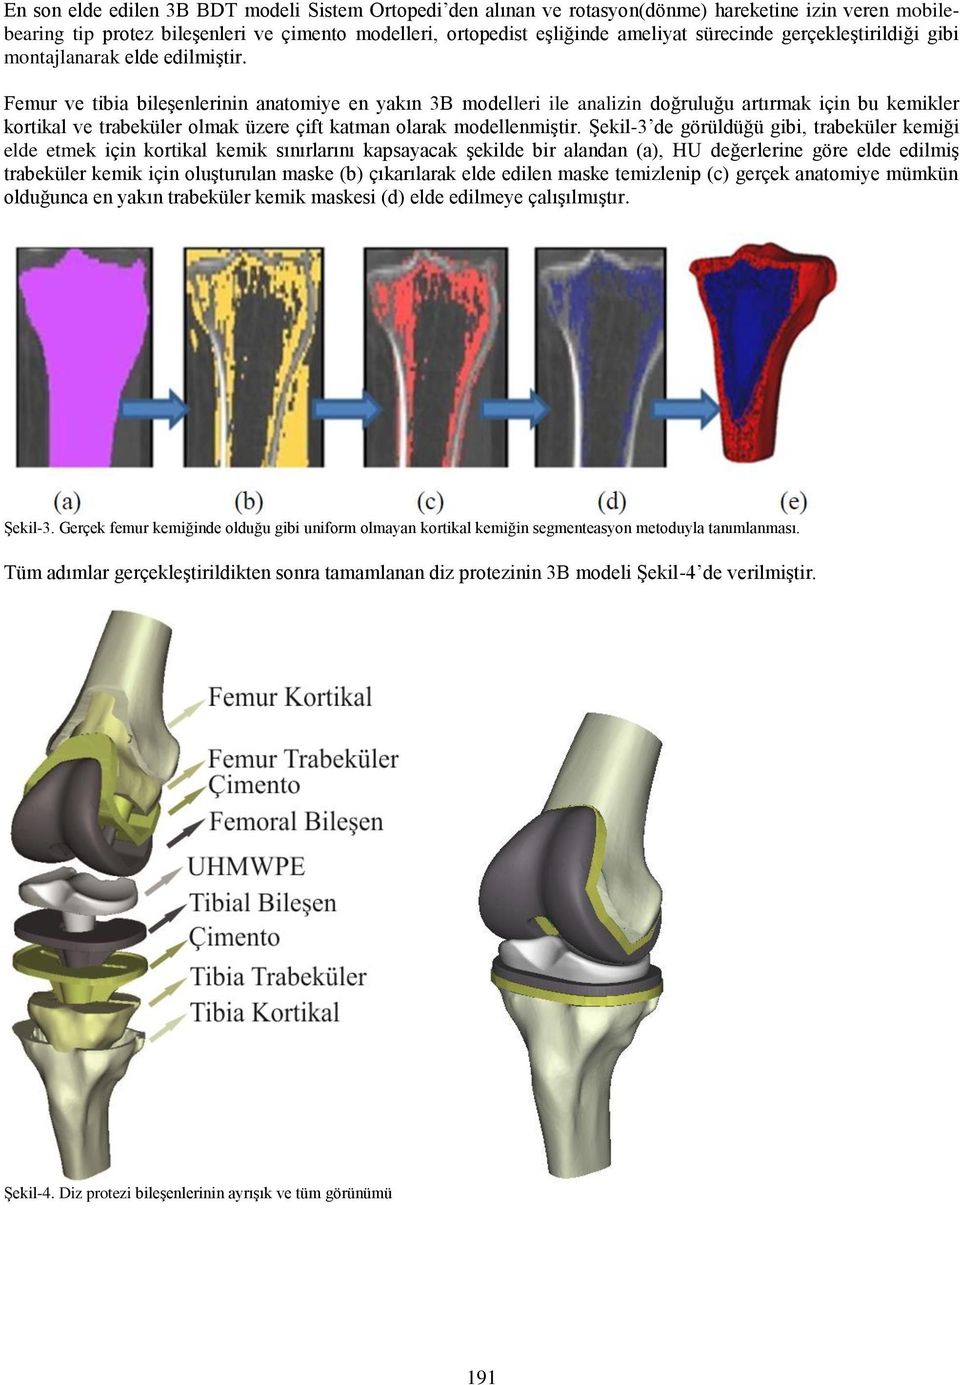 Femur ve tibia bileşenlerinin anatomiye en yakın 3B modelleri ile analizin doğruluğu artırmak için bu kemikler kortikal ve trabeküler olmak üzere çift katman olarak modellenmiştir.